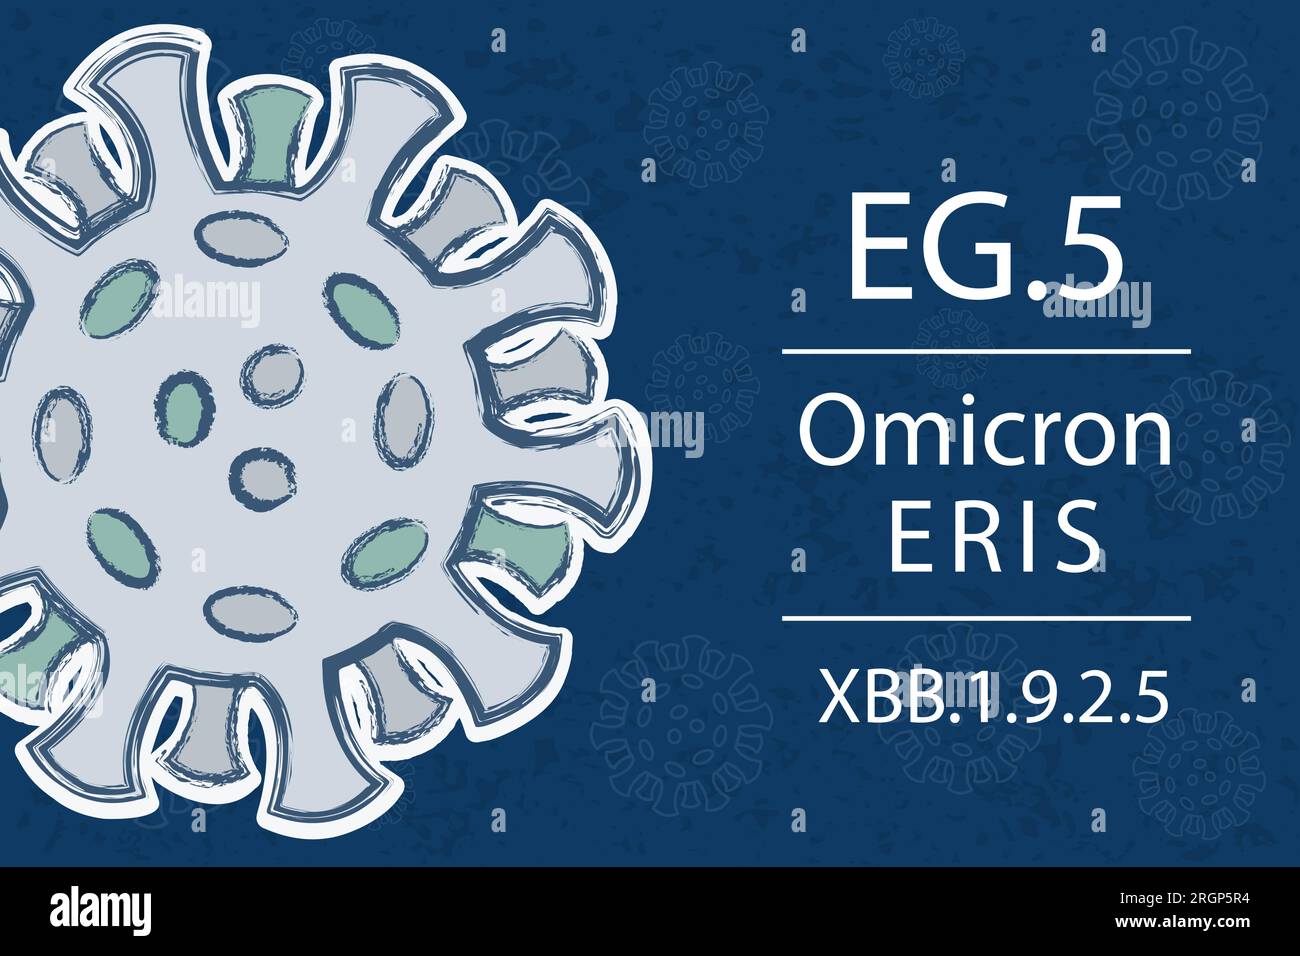 Une nouvelle variante Omicron EG.5 alias XBB.1,9.2,5. Également connu sous le nom d'Eris. Texte blanc sur fond bleu foncé avec image du coronavirus. Illustration de Vecteur